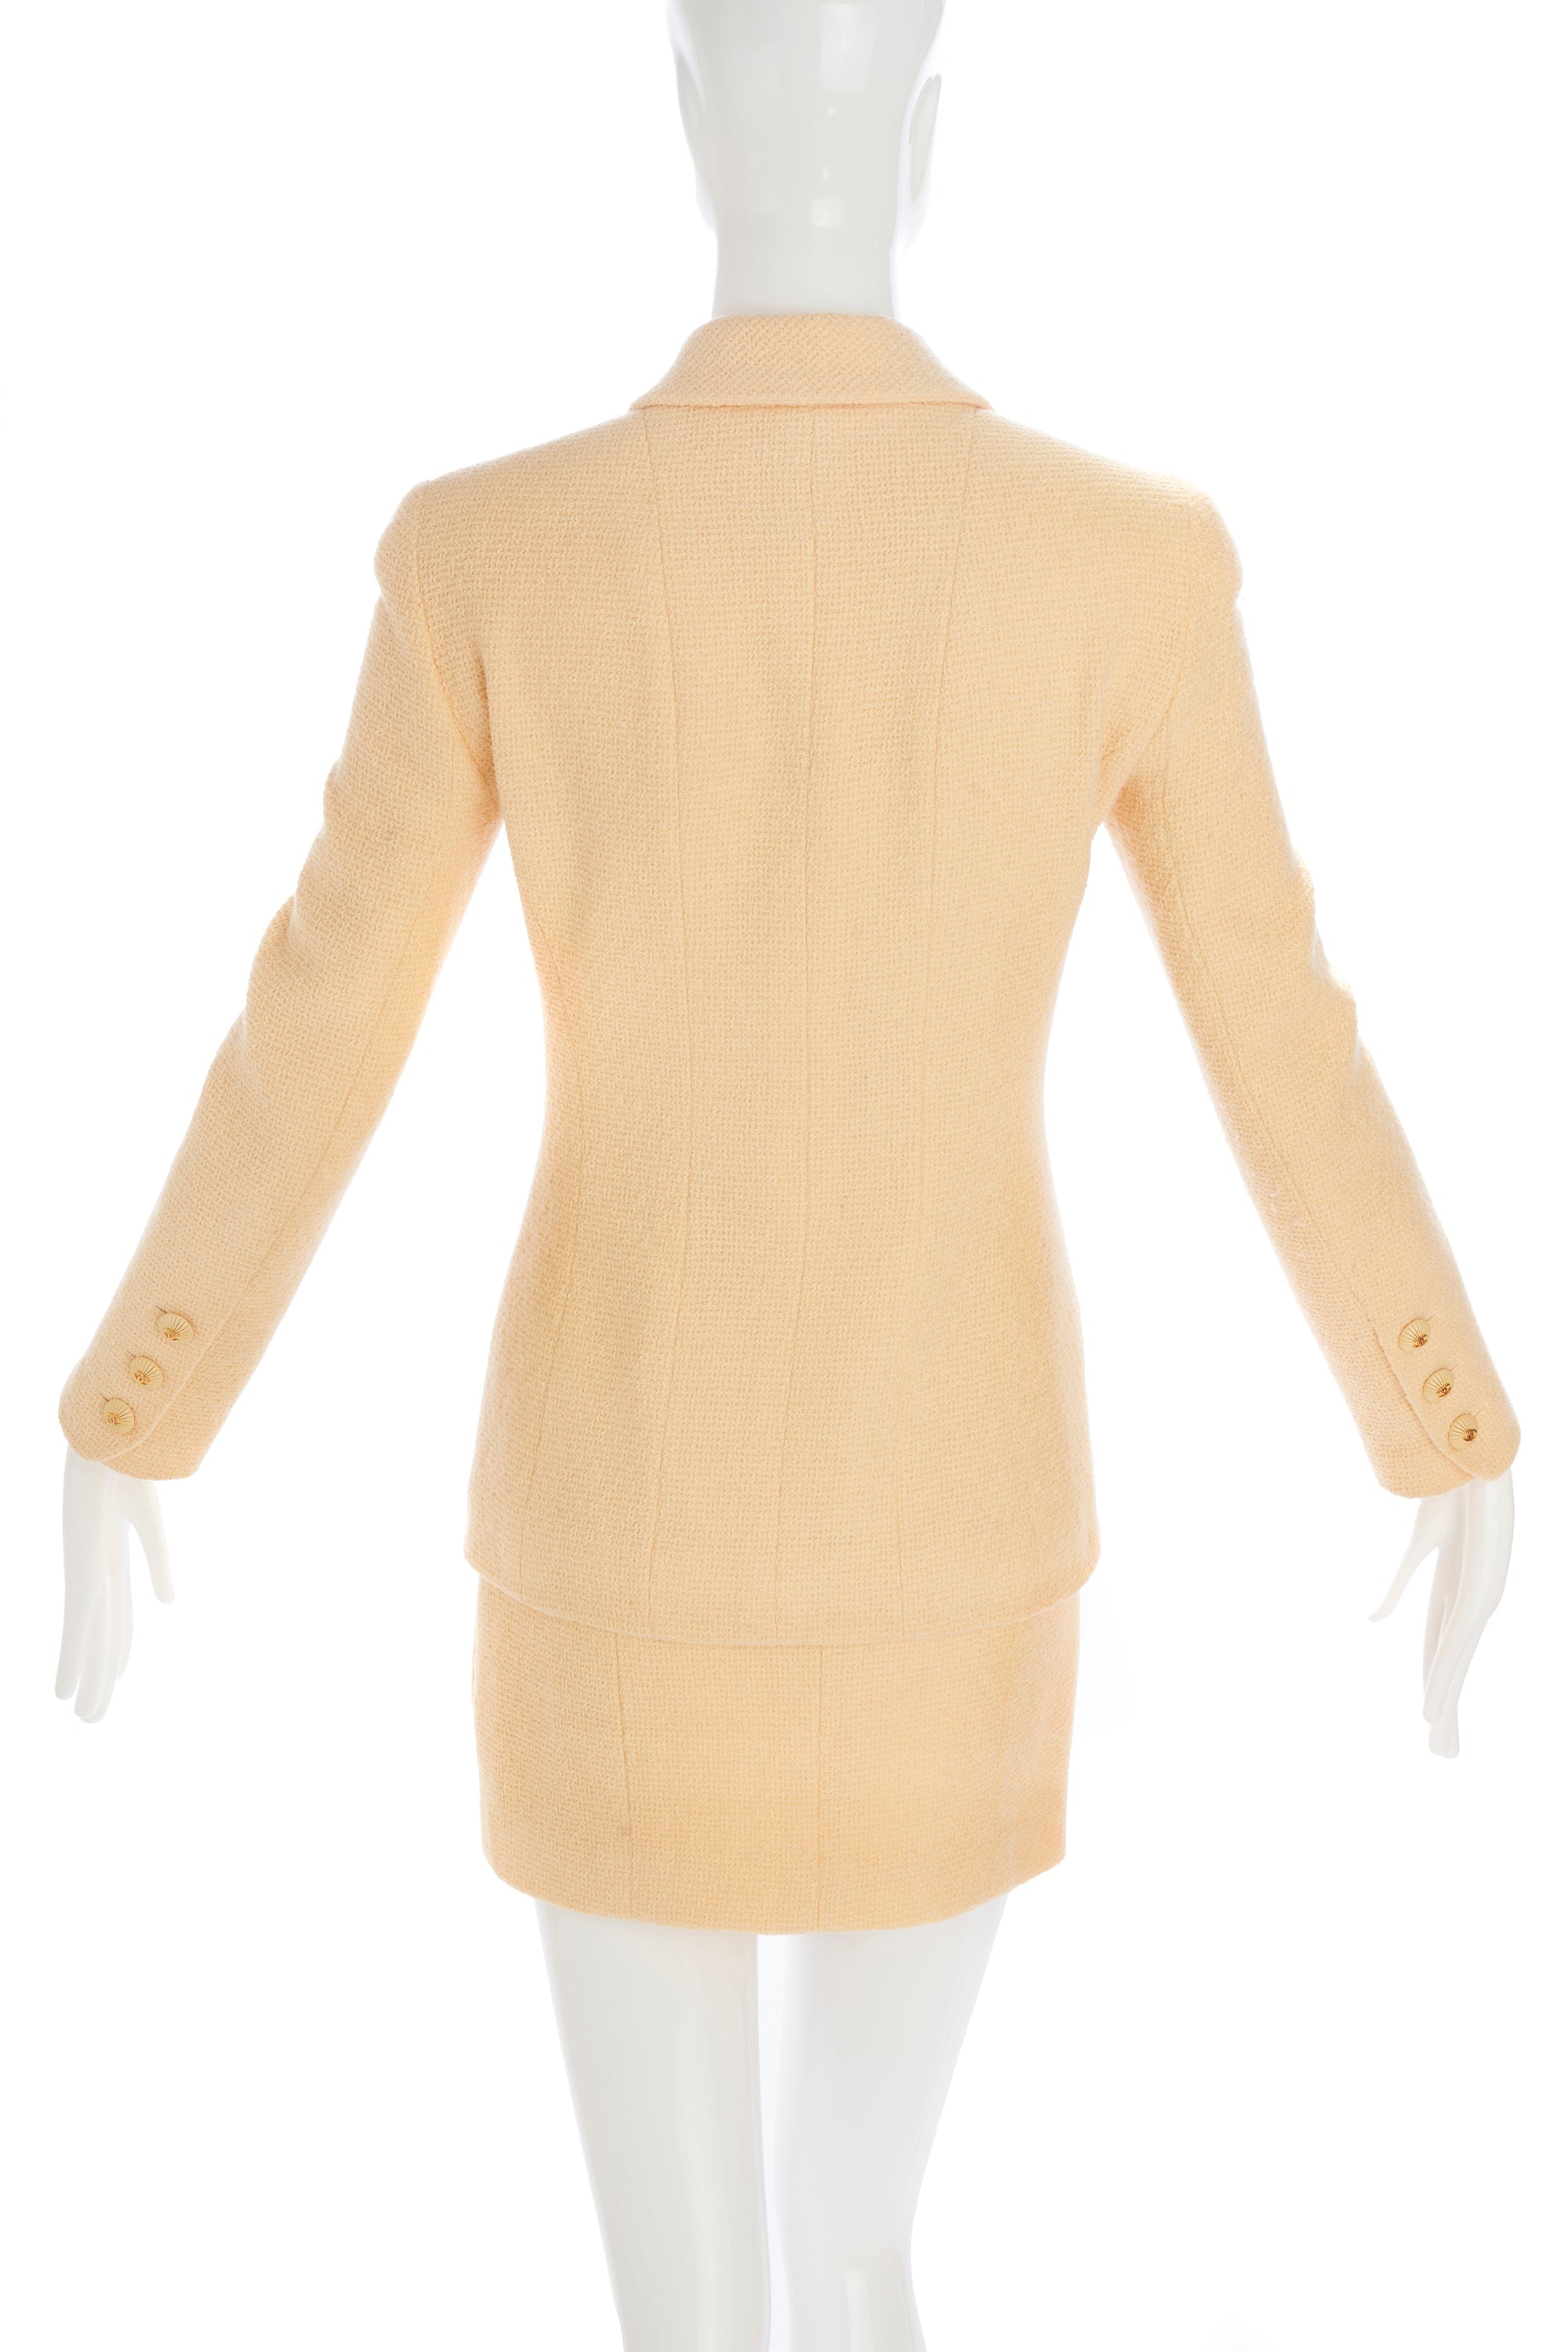 Chanel Yellow Tweed Skirt and Jacket Set Size 36